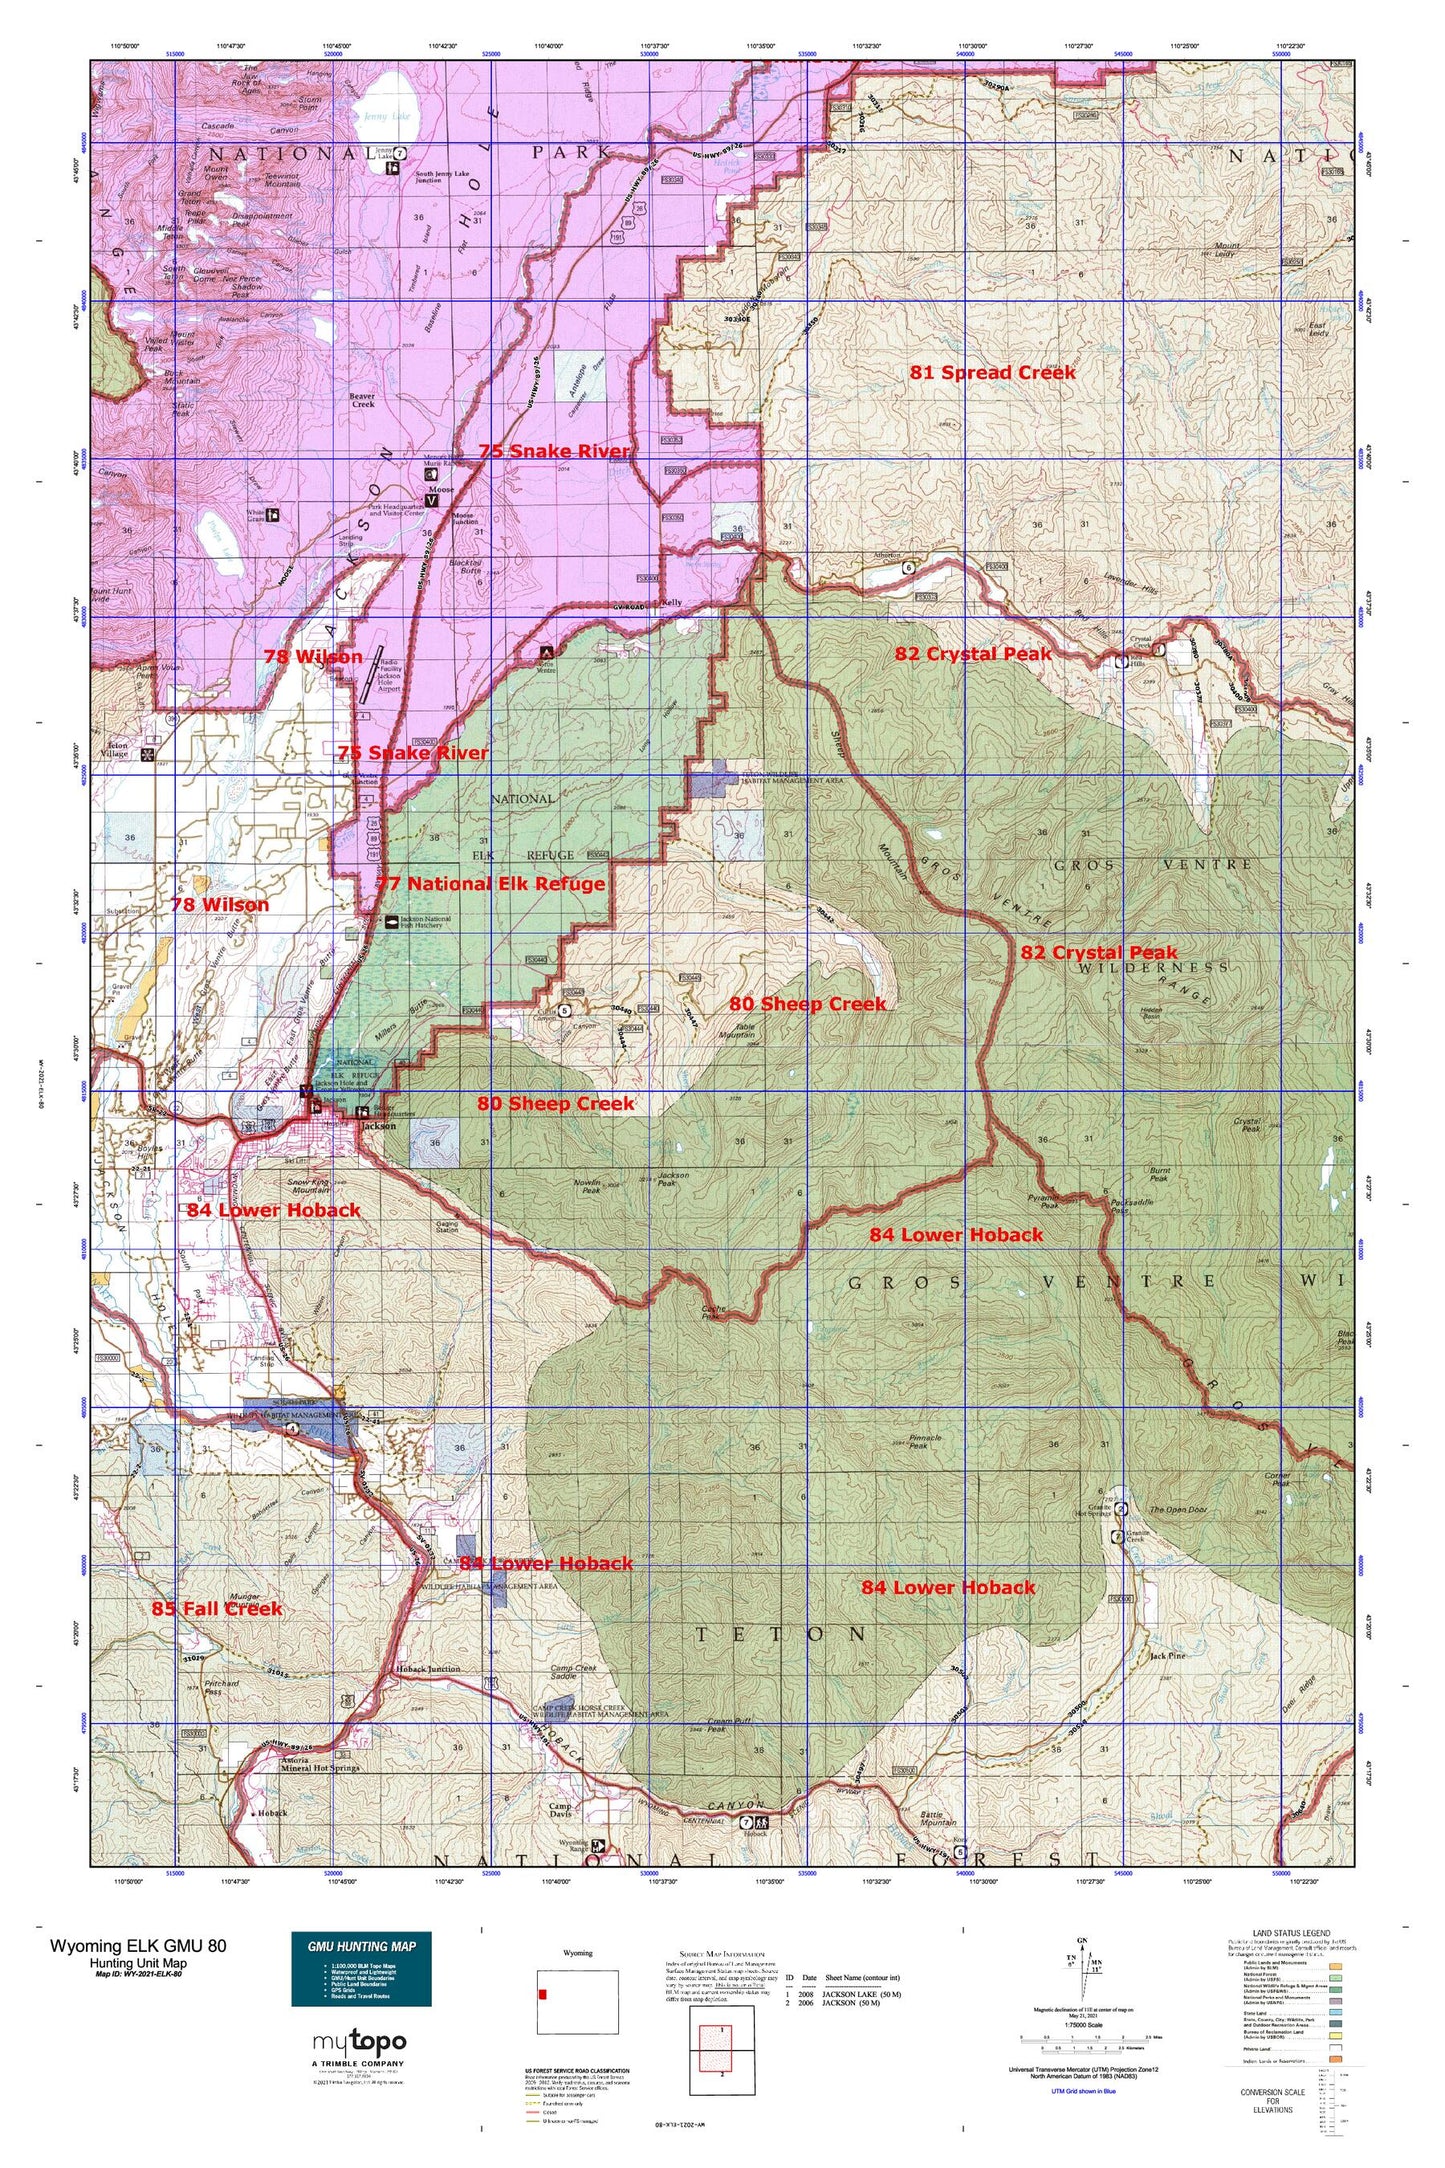 Wyoming Elk GMU 80 Map Image